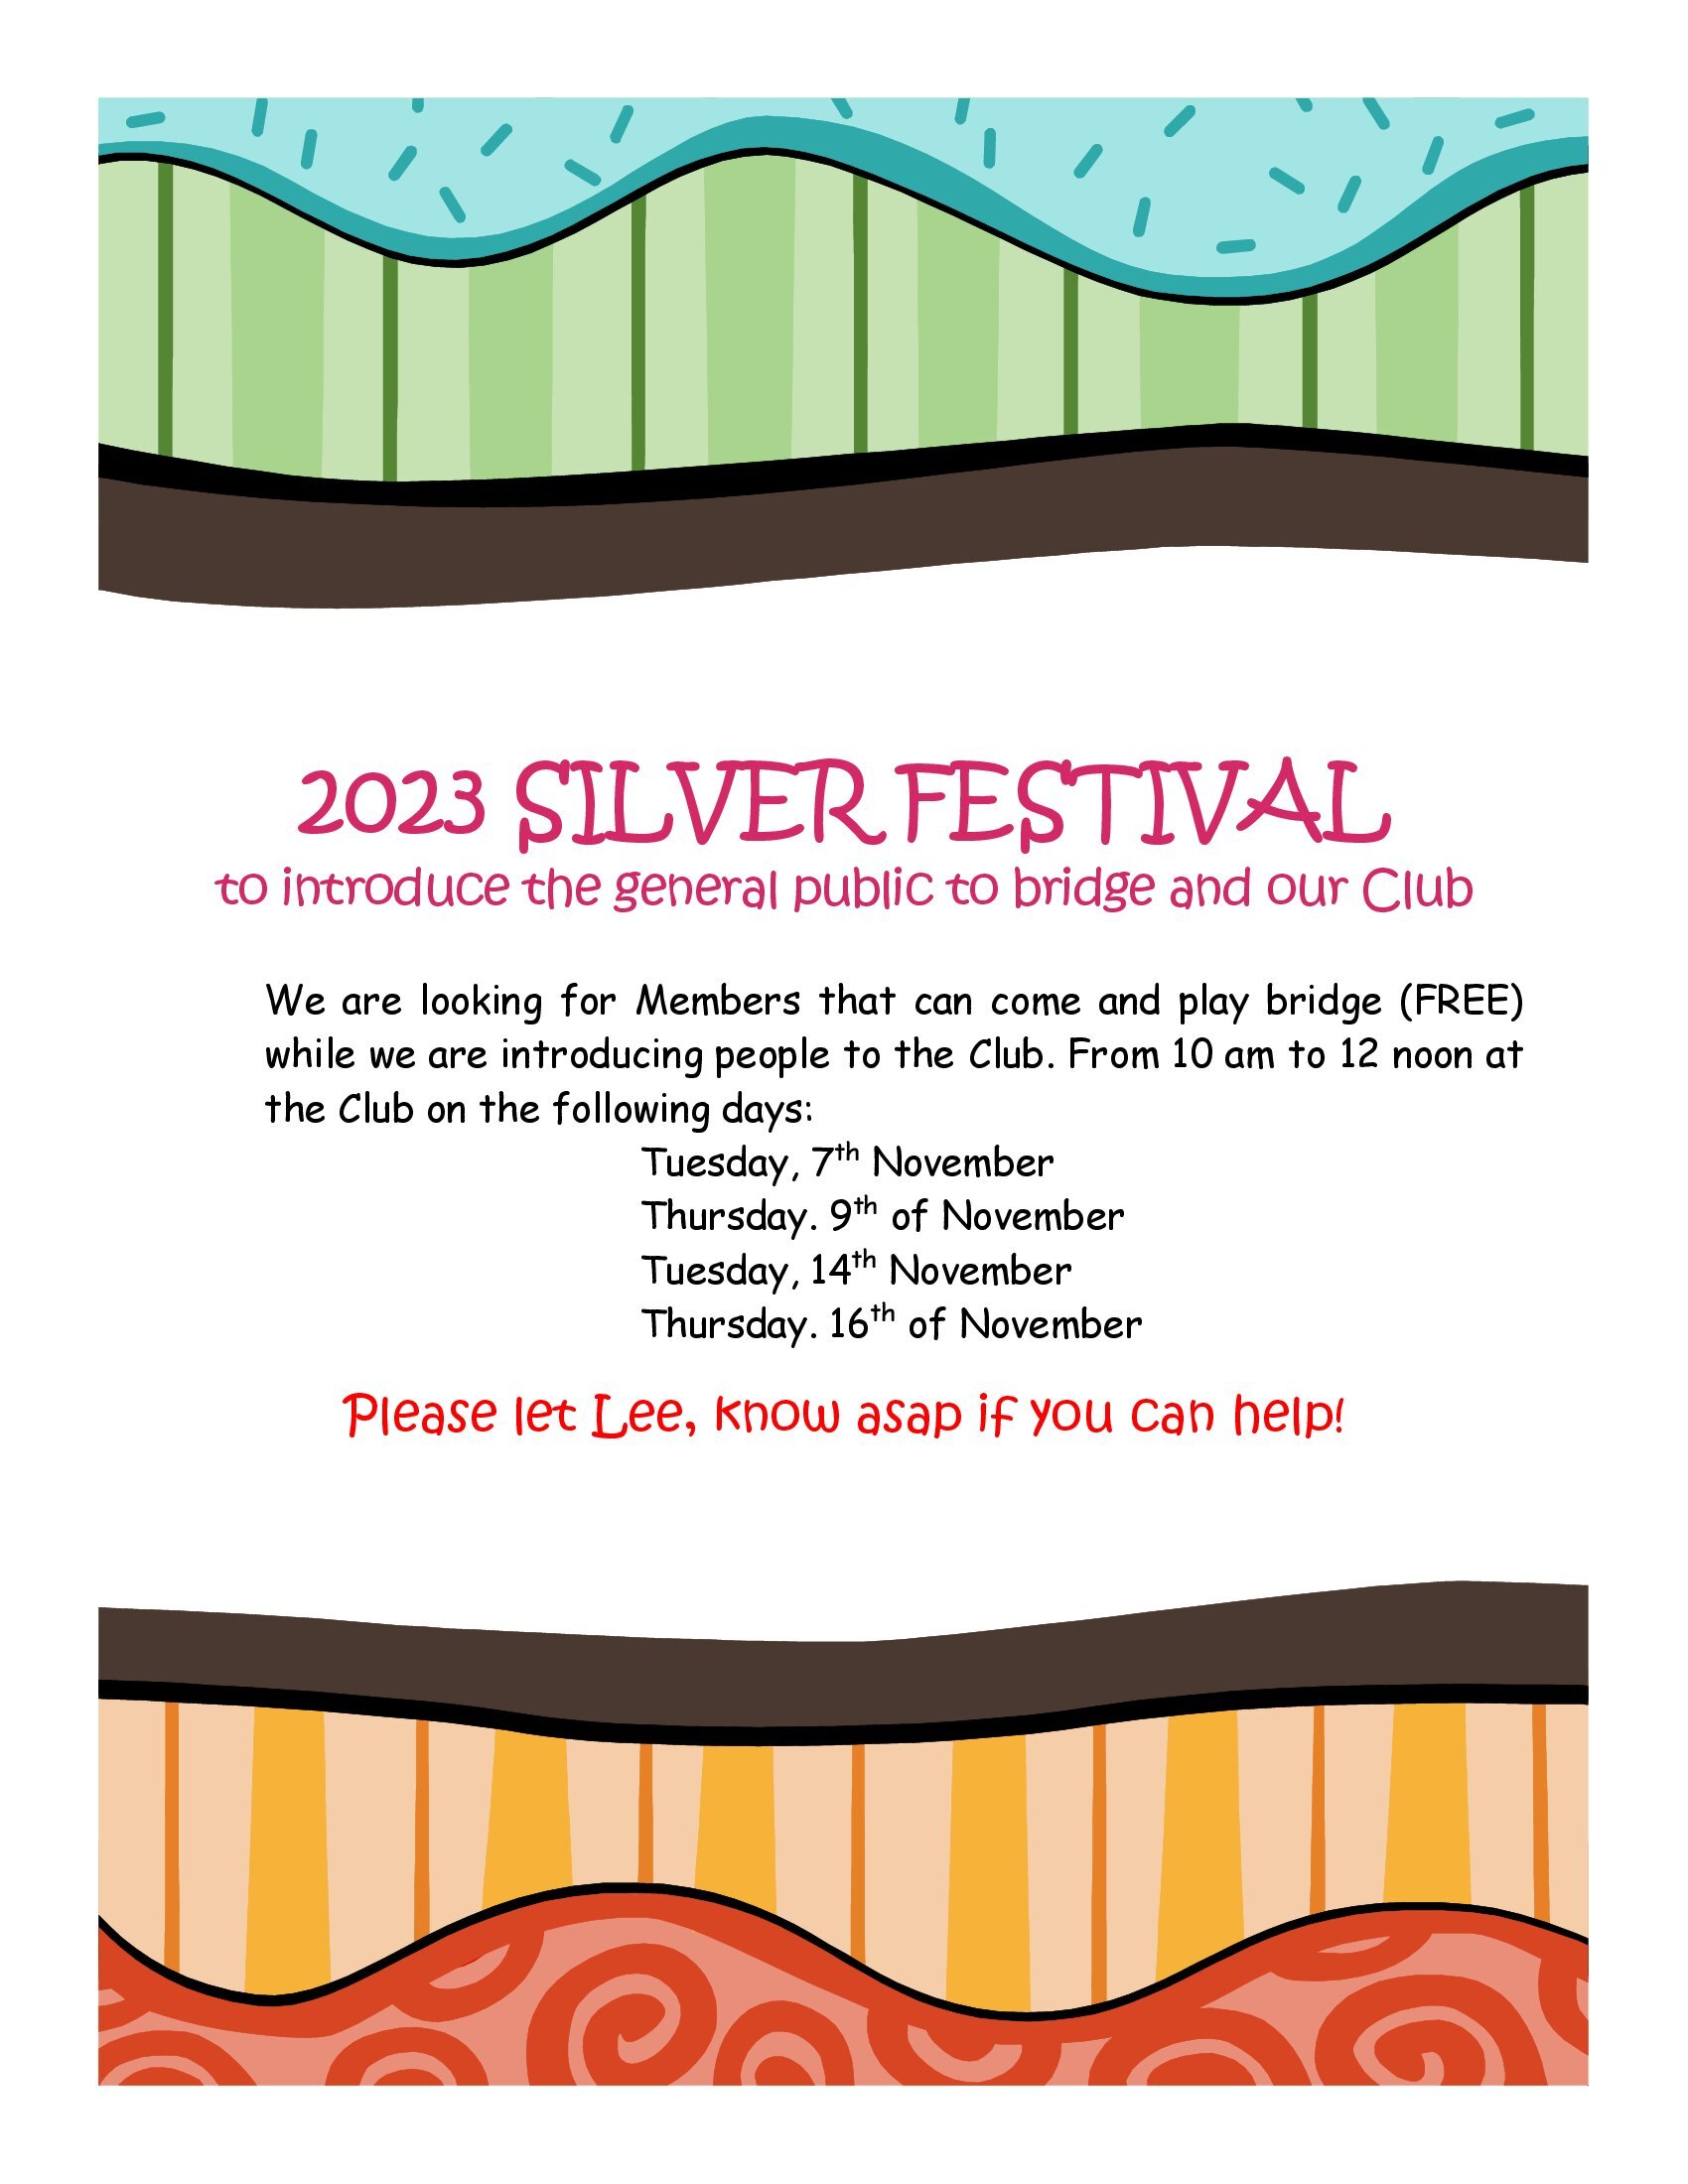 2023 Silver Festival